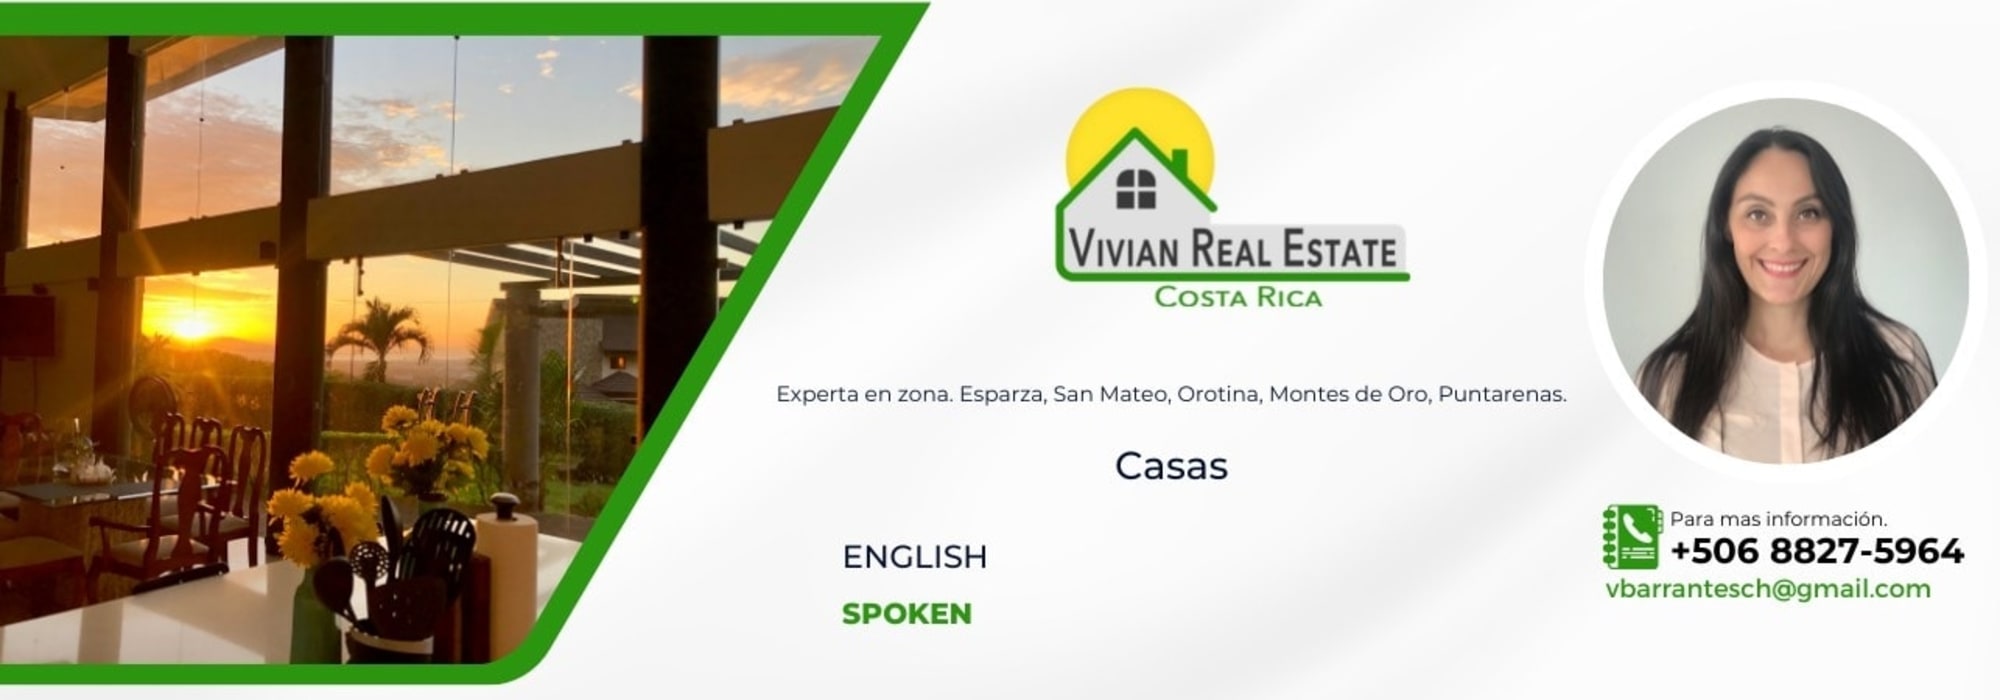 Vivian Real Estate Costa Rica